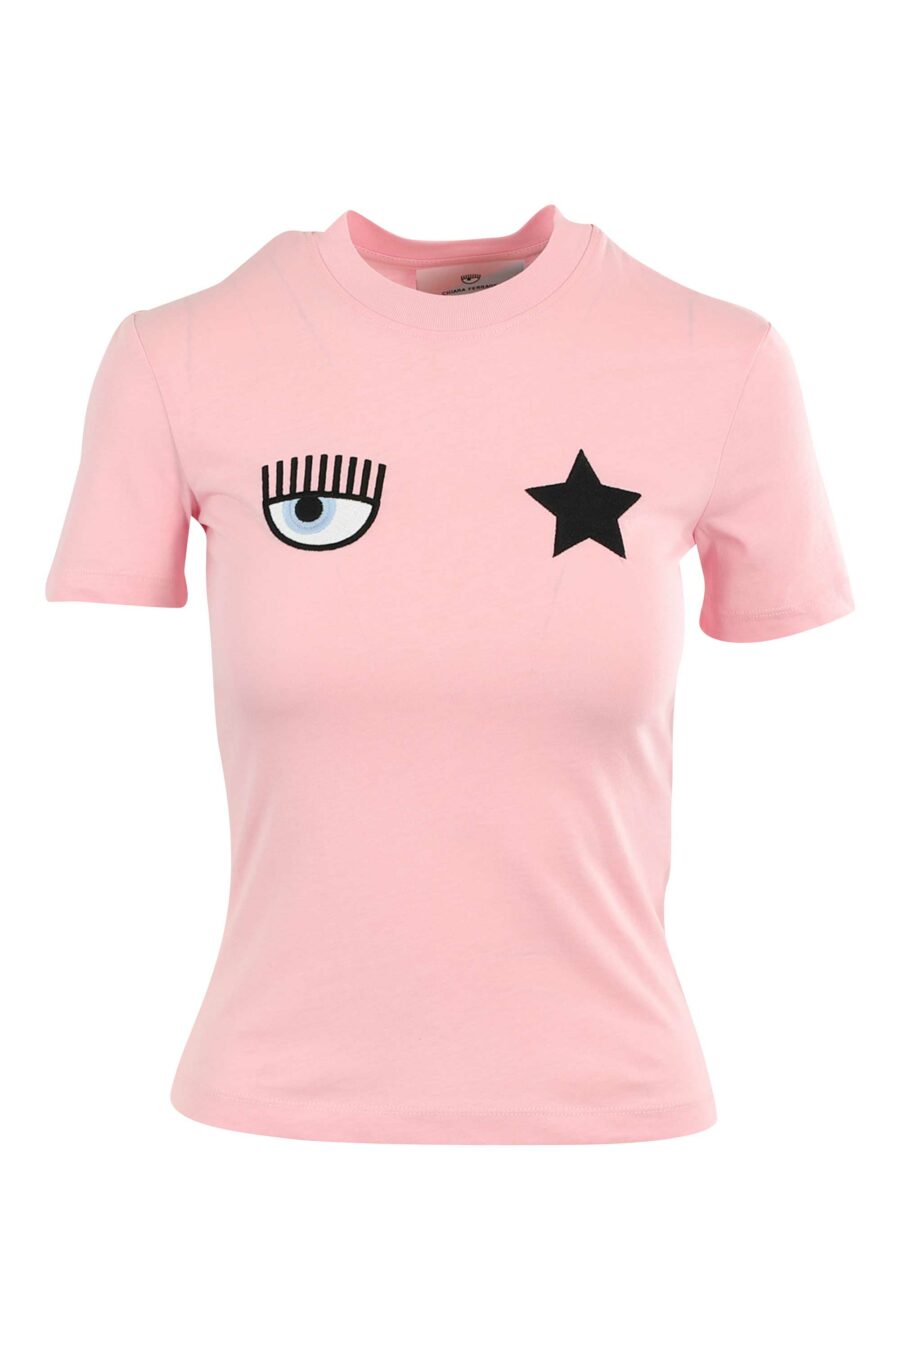 Camiseta rosa con ojo y estrella - 8052672416841